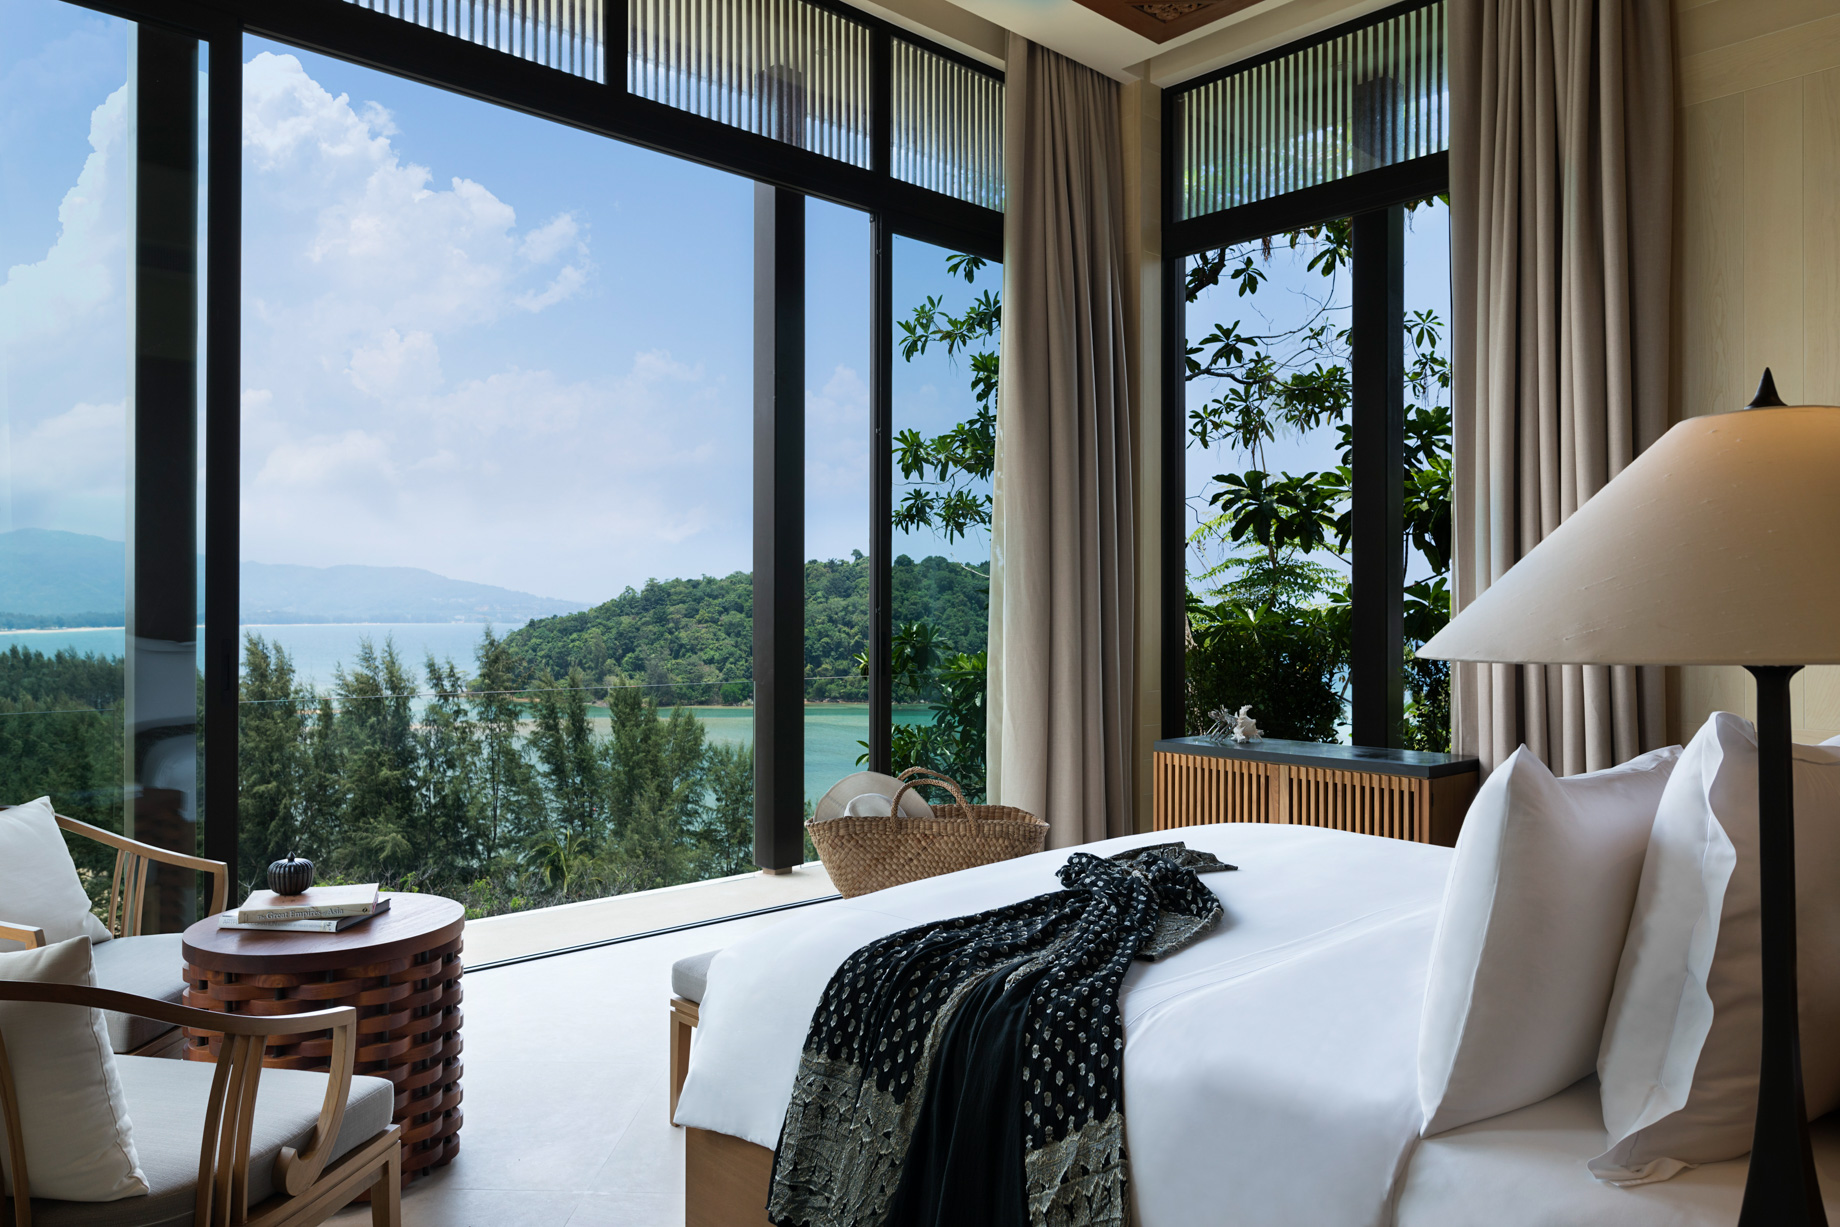 Anantara Layan Phuket Resort & Residences – Thailand – Residence Bedroom View